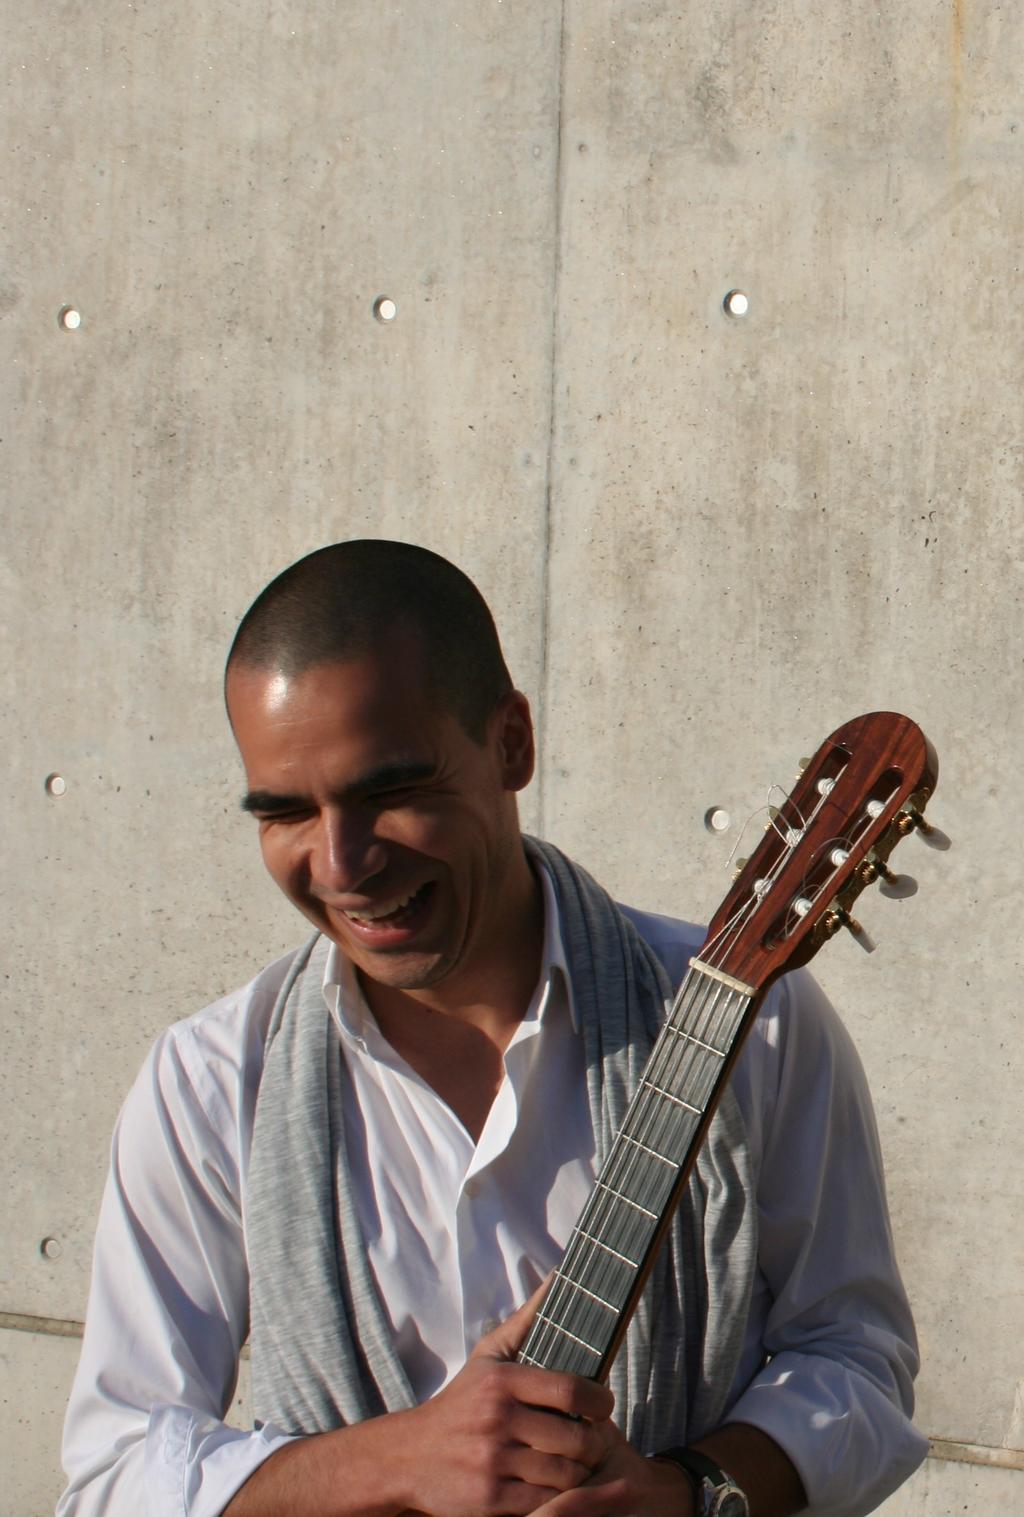 Foto de Nuno Cassola Eduardo Baltar Soares guitarrista diplomado pelo Conservatório Superior de Música de Castilla y León, licenciado em História pela Universidade do Porto e mestre em ensino da